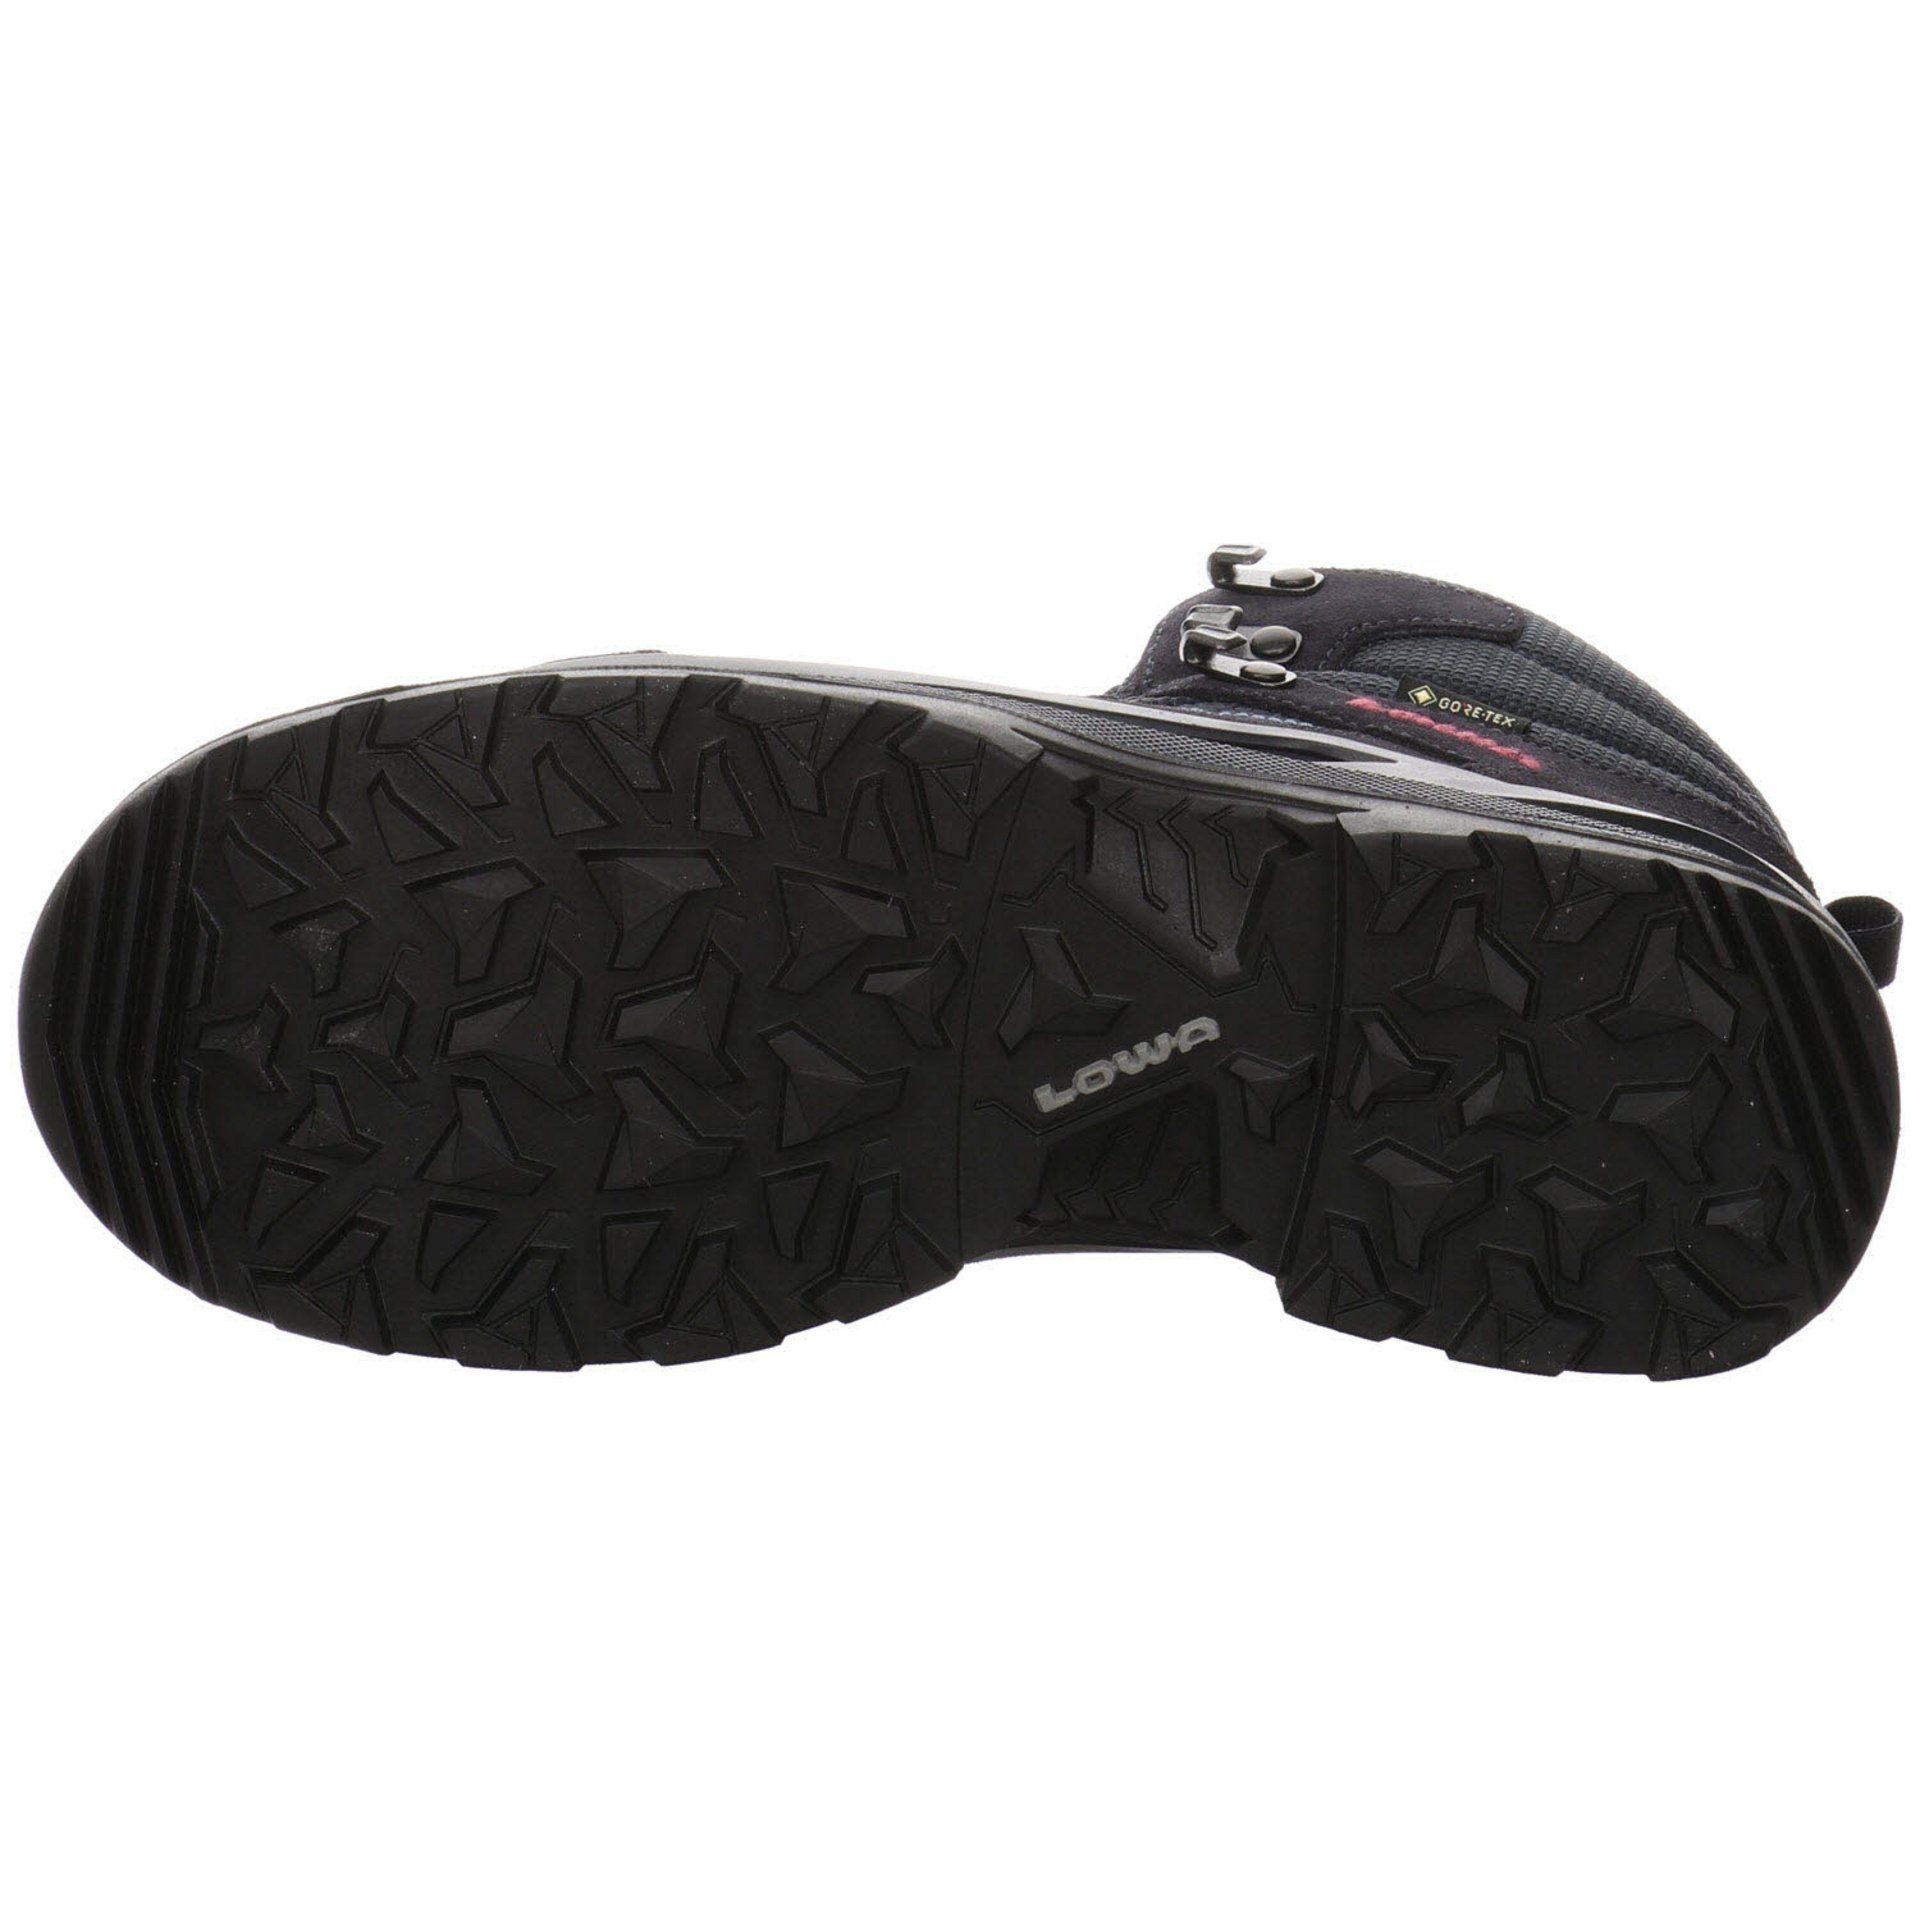 Lowa Damen Schuhe Outdoor Outdoorschuh Leder-/Textilkombination NAVY